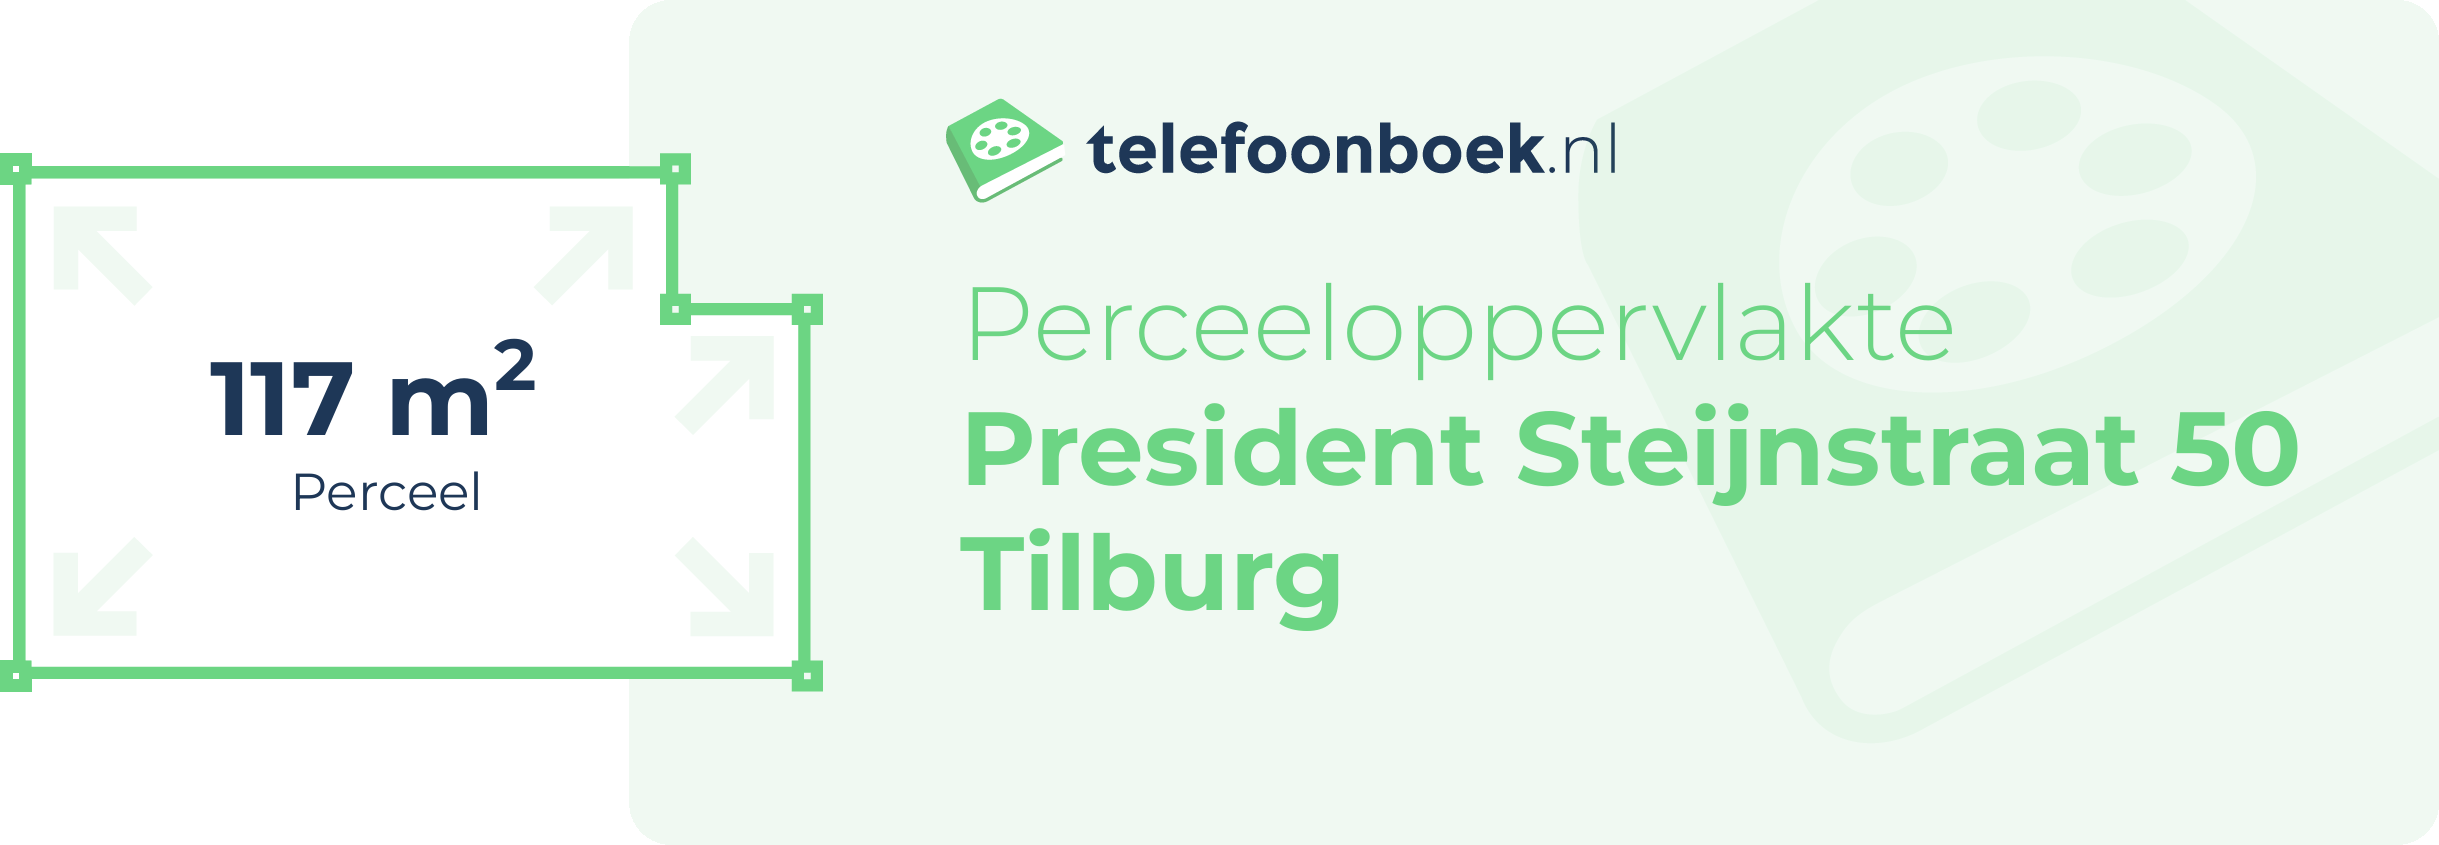 Perceeloppervlakte President Steijnstraat 50 Tilburg